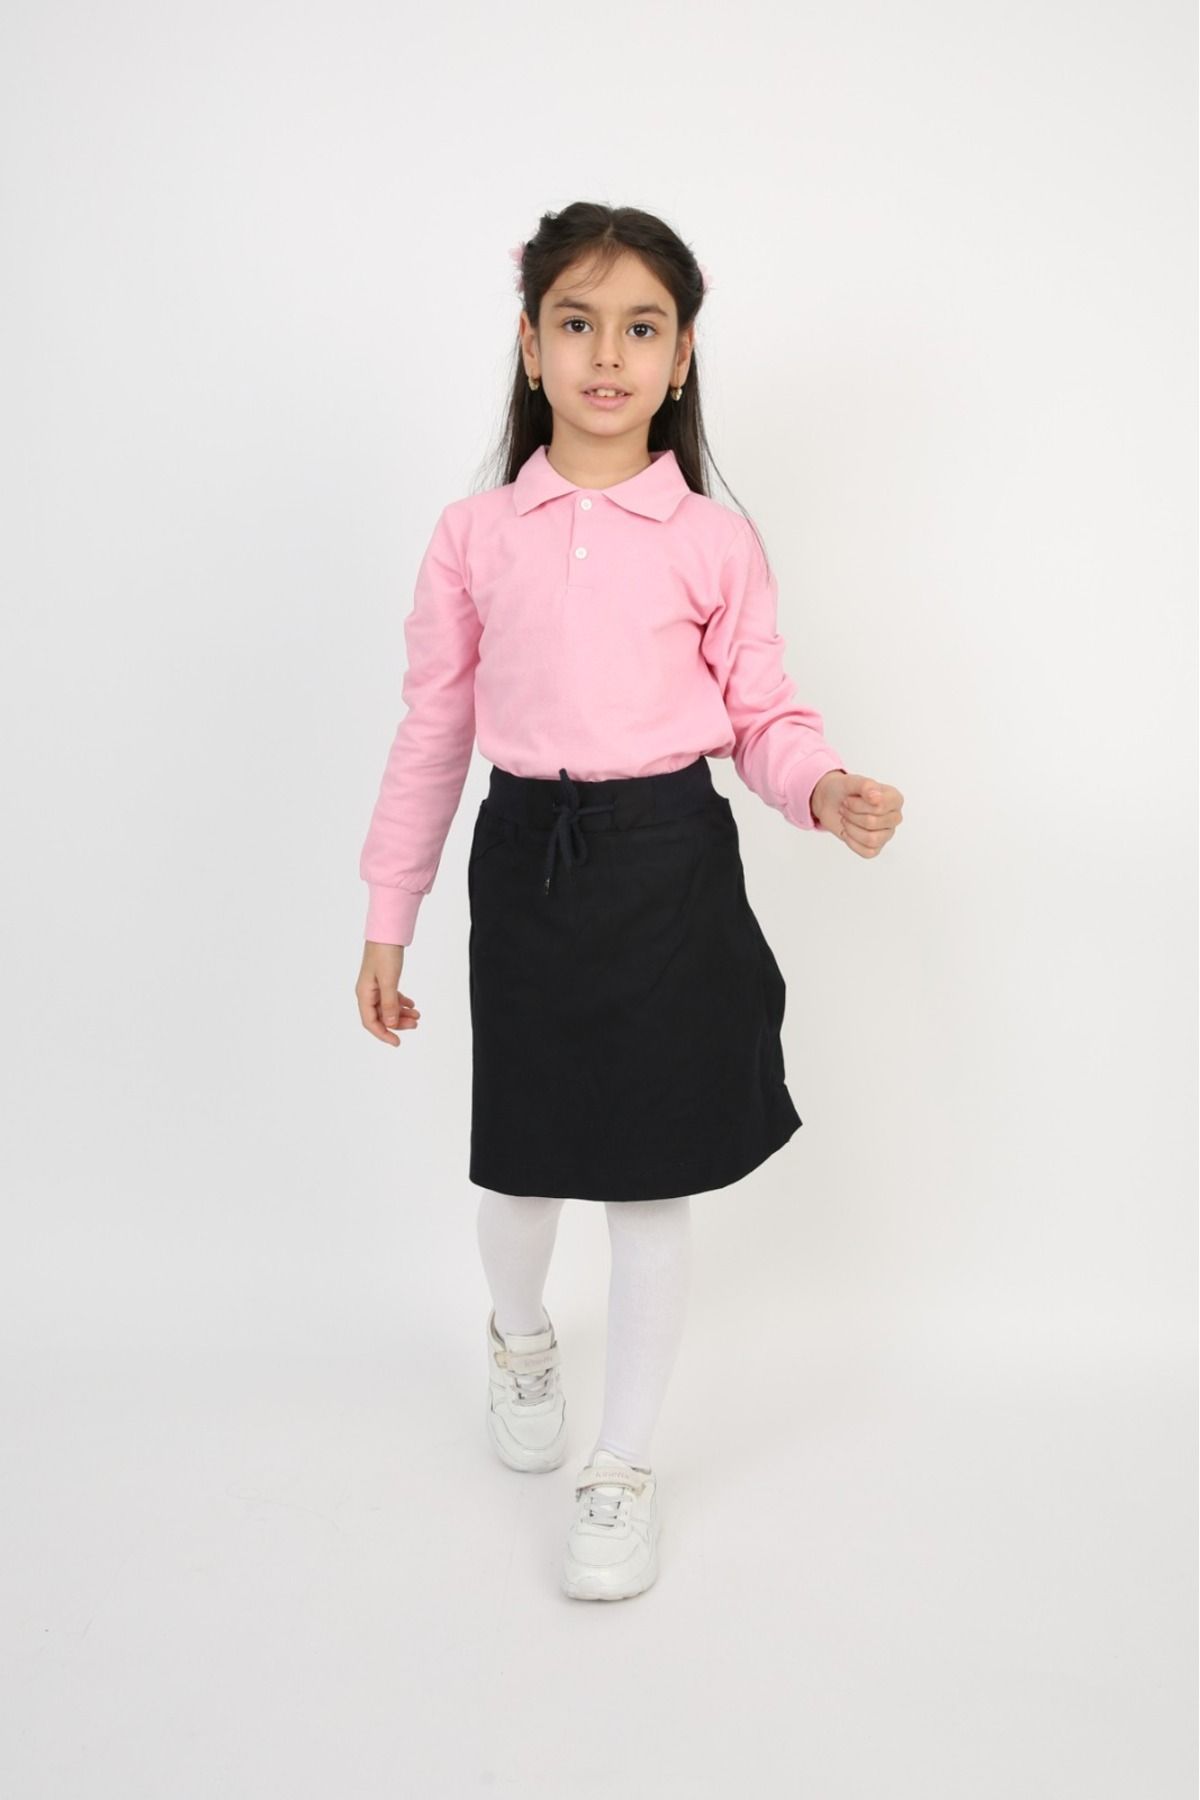 FATELLA Kız Çocuk Polo Yaka Tişört Keten Etek Takım 23 Nisan 29 Ekim Gösteri Kıyafeti